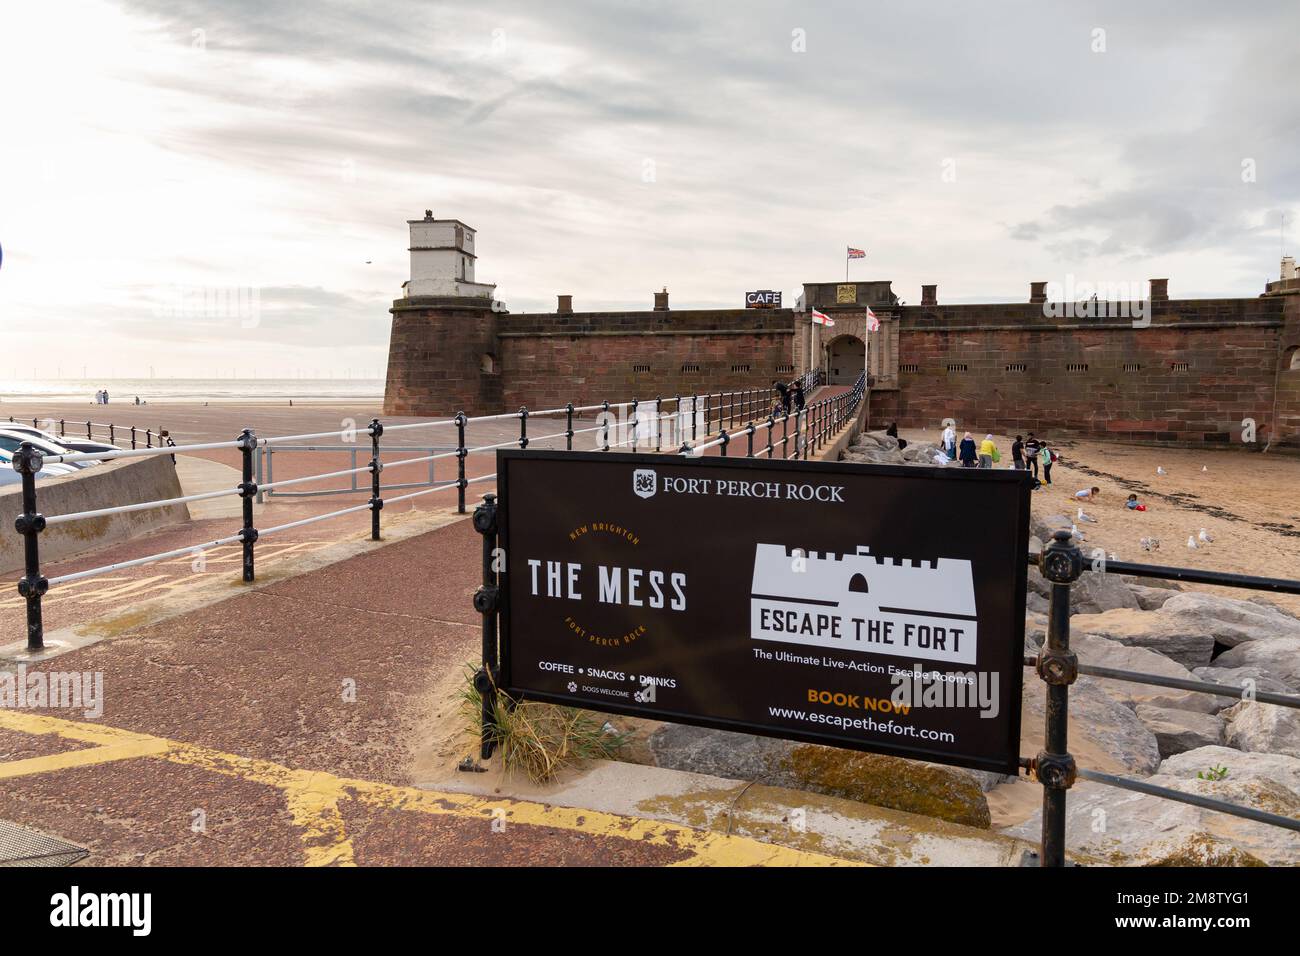 New Brighton, Regno Unito: Ingresso a Fort Perch Rock e cartello per il caffè Mess e le camere di fuga. Foto Stock